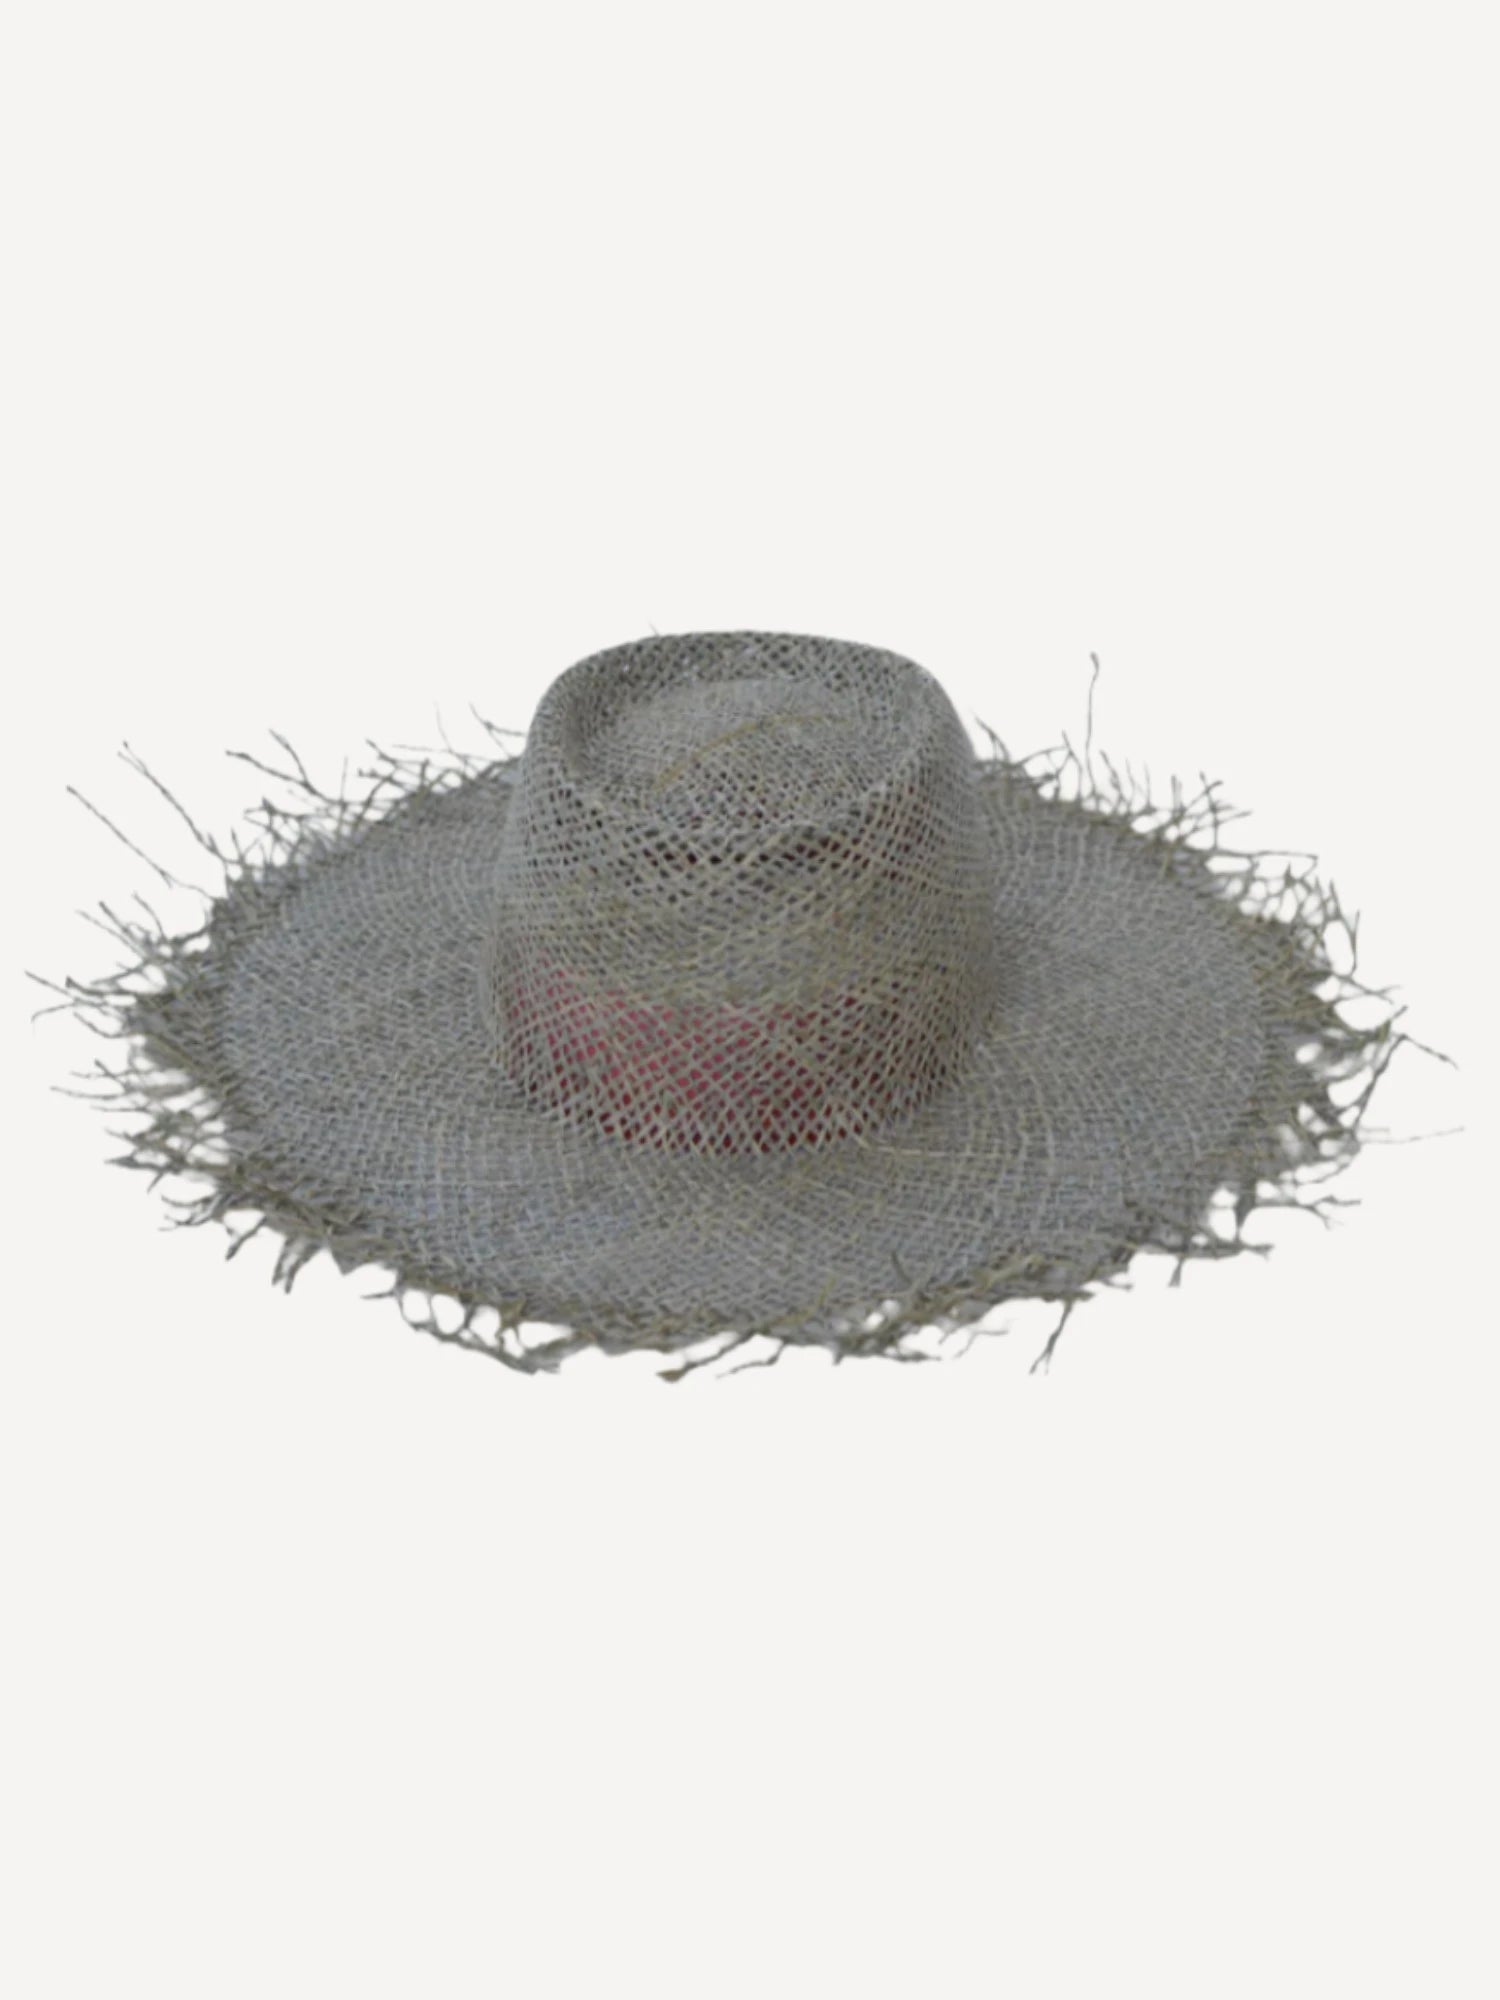 Munich Hat